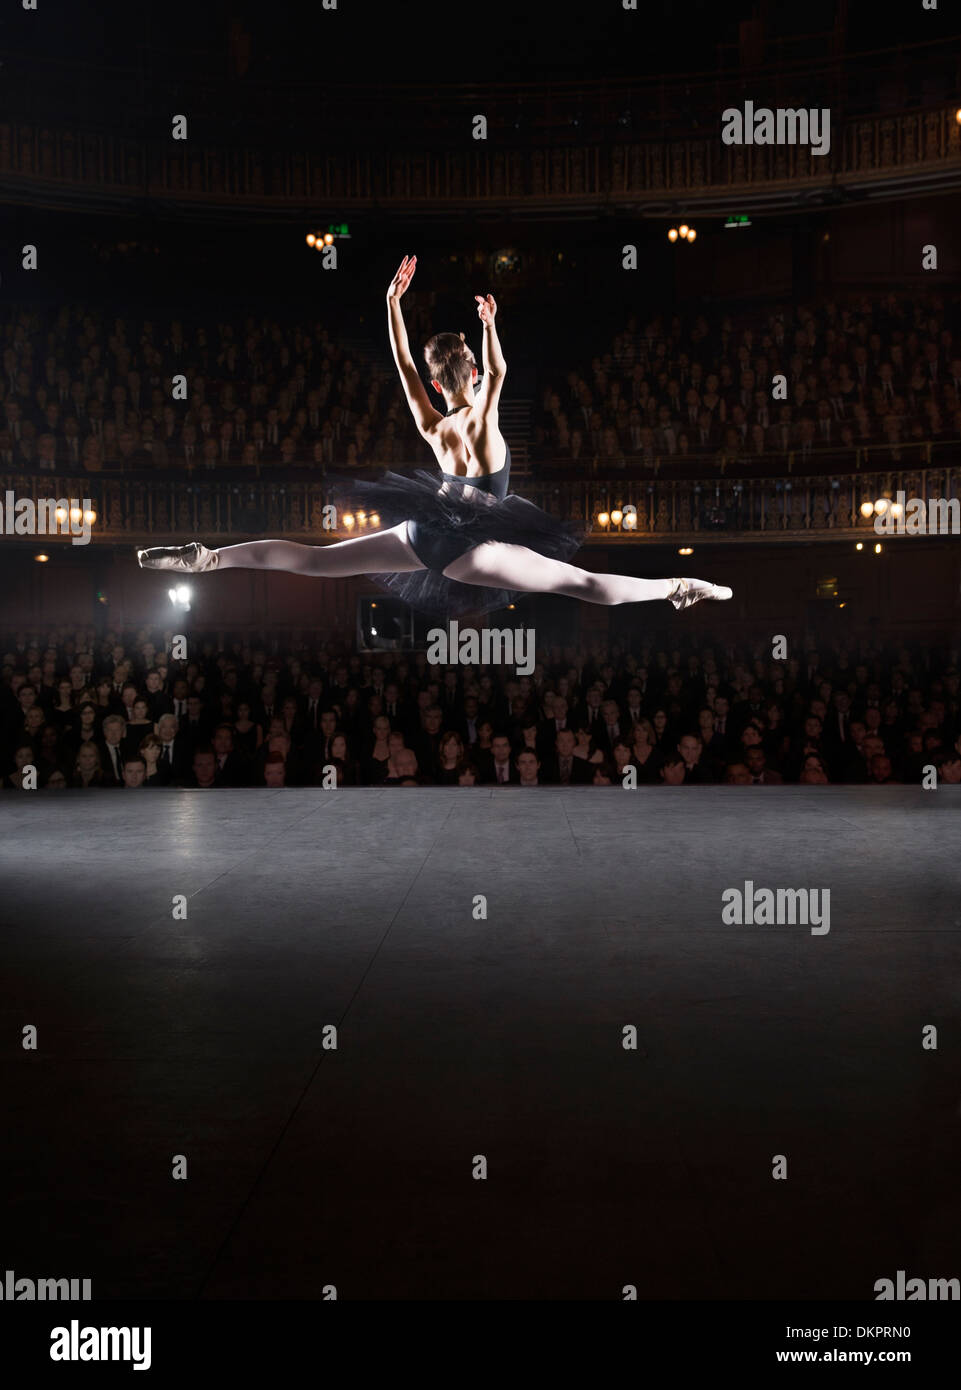 Bailarina en mitad del aire sobre el escenario Foto de stock